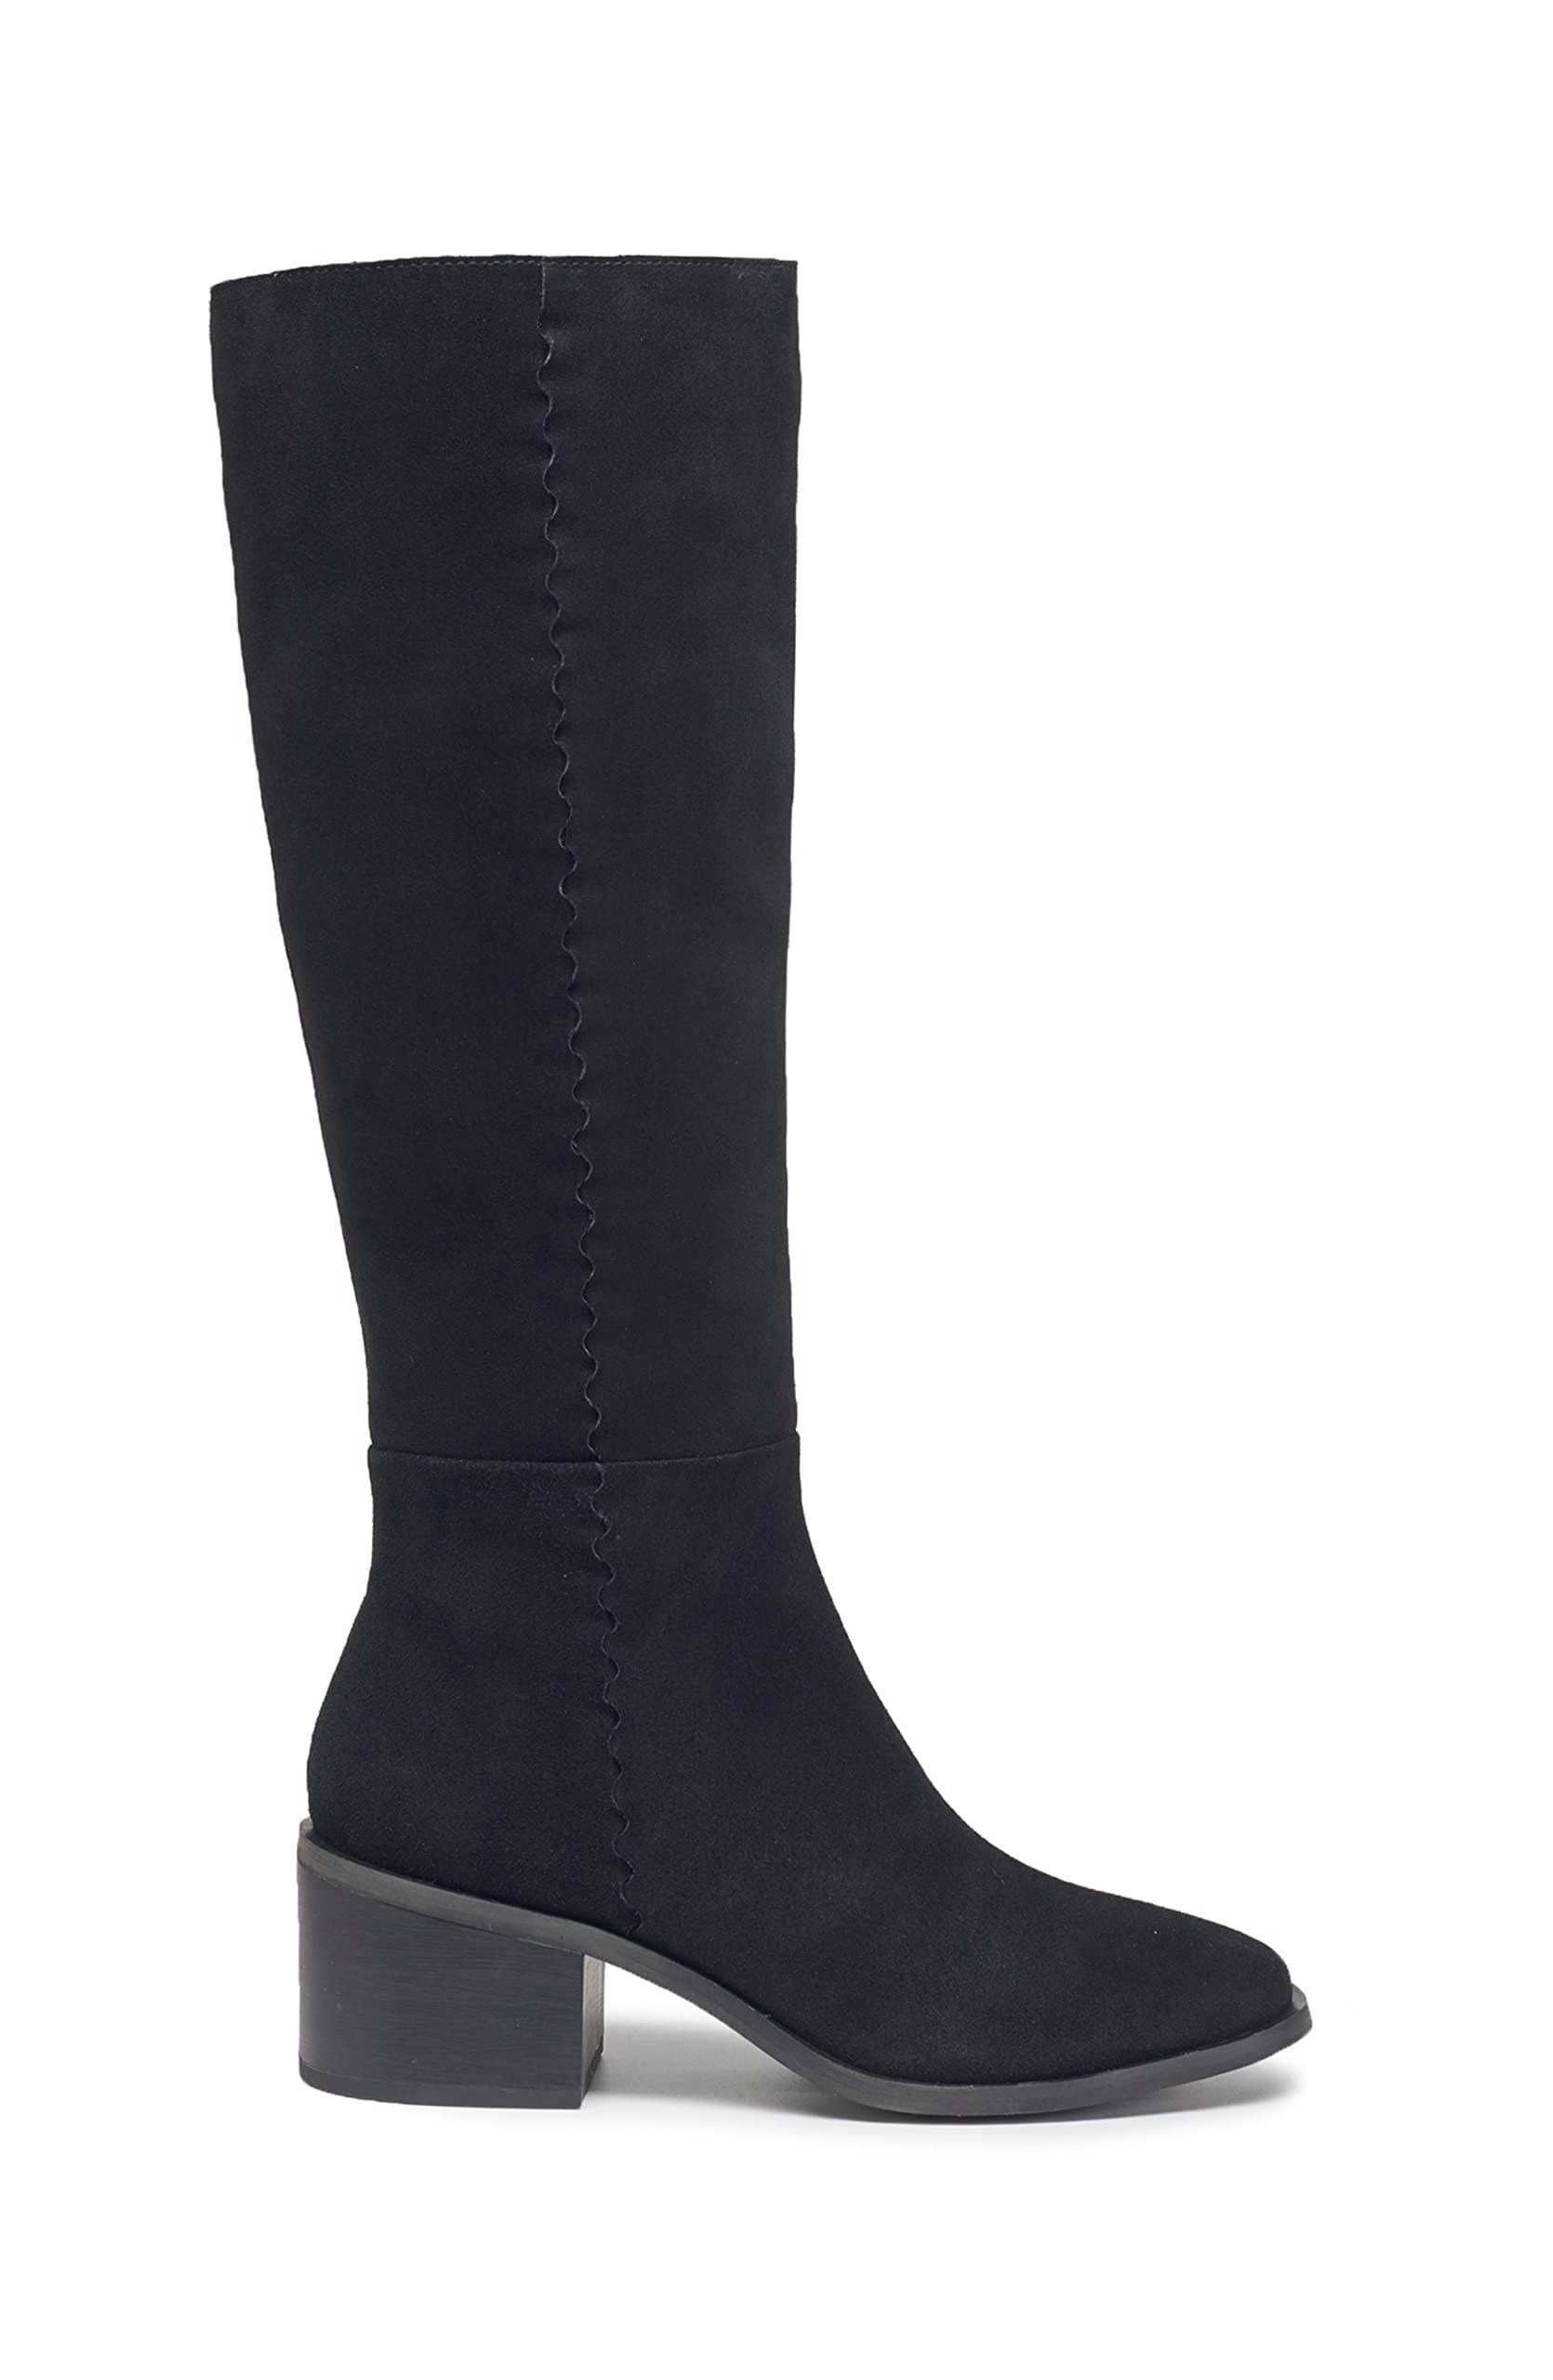 Splendid S Abby Knee High Boot in Black | Lyst